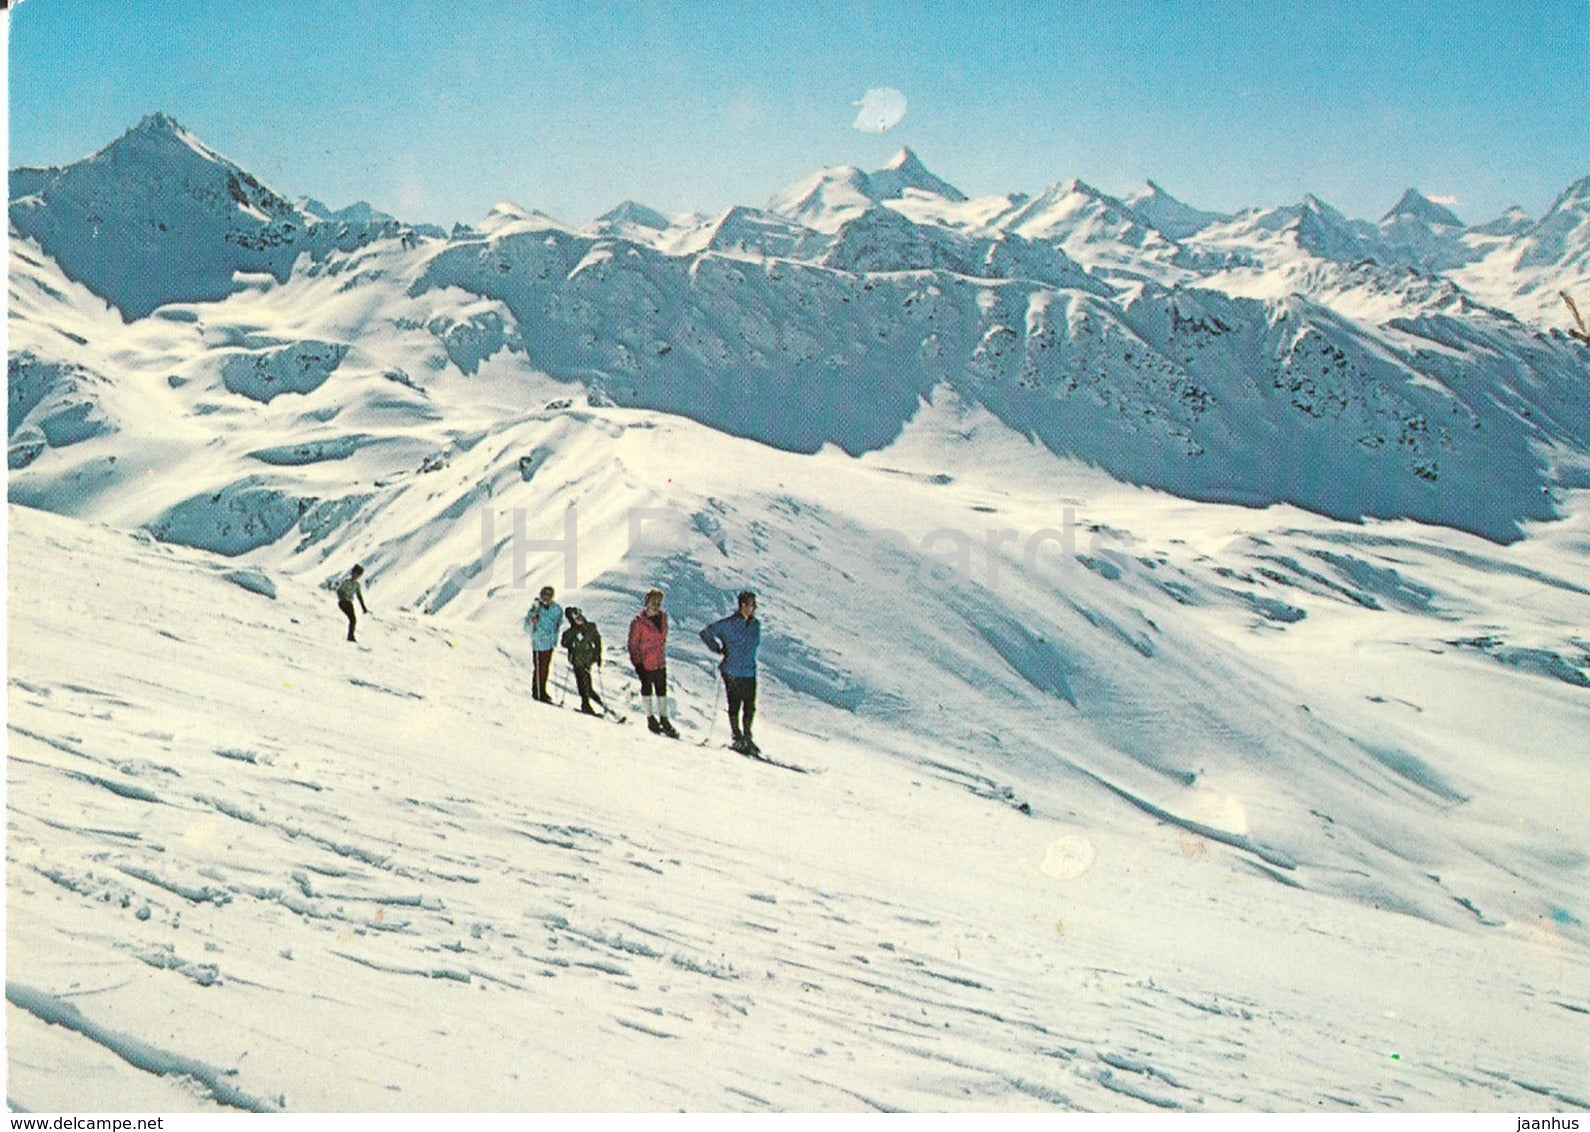 Le Cervin et les majestueux 4000 du Val d'Anniviers - 122 - 1974 - Switzerland - used - JH Postcards